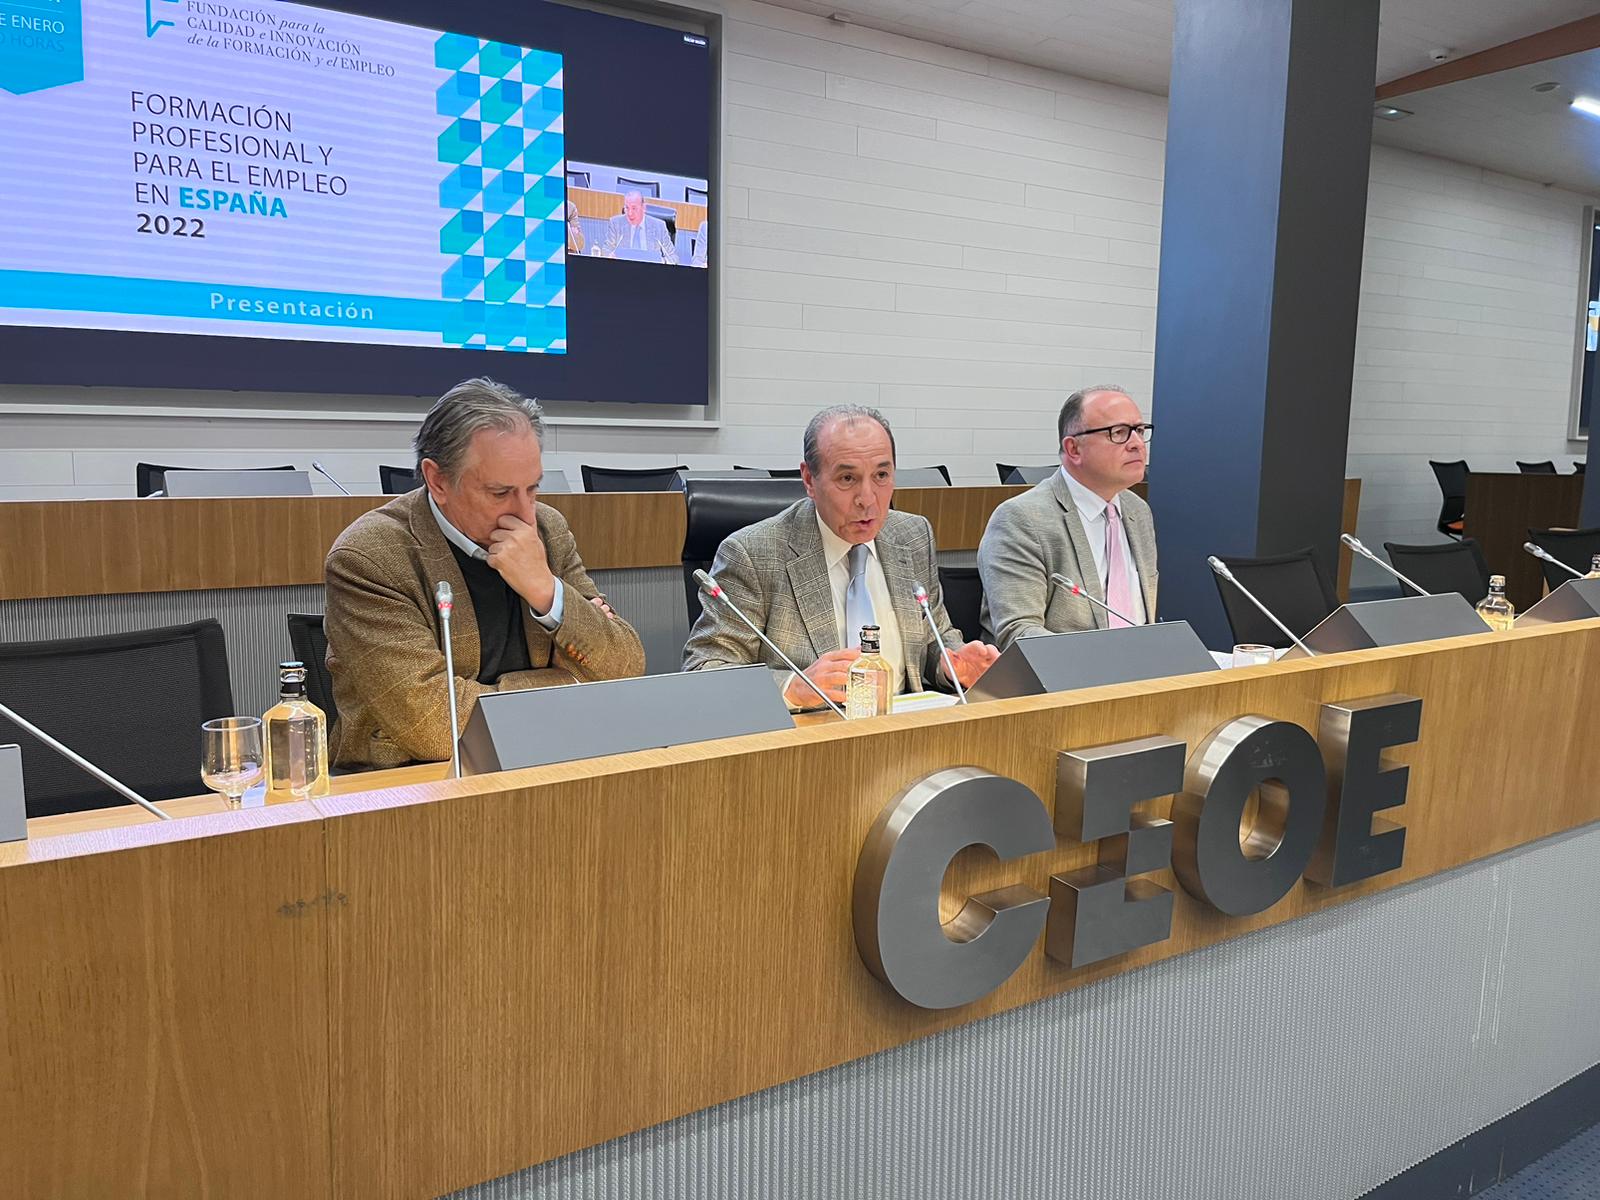 Presentación del Informe «Formación Profesional y para el Empleo en España 2022»